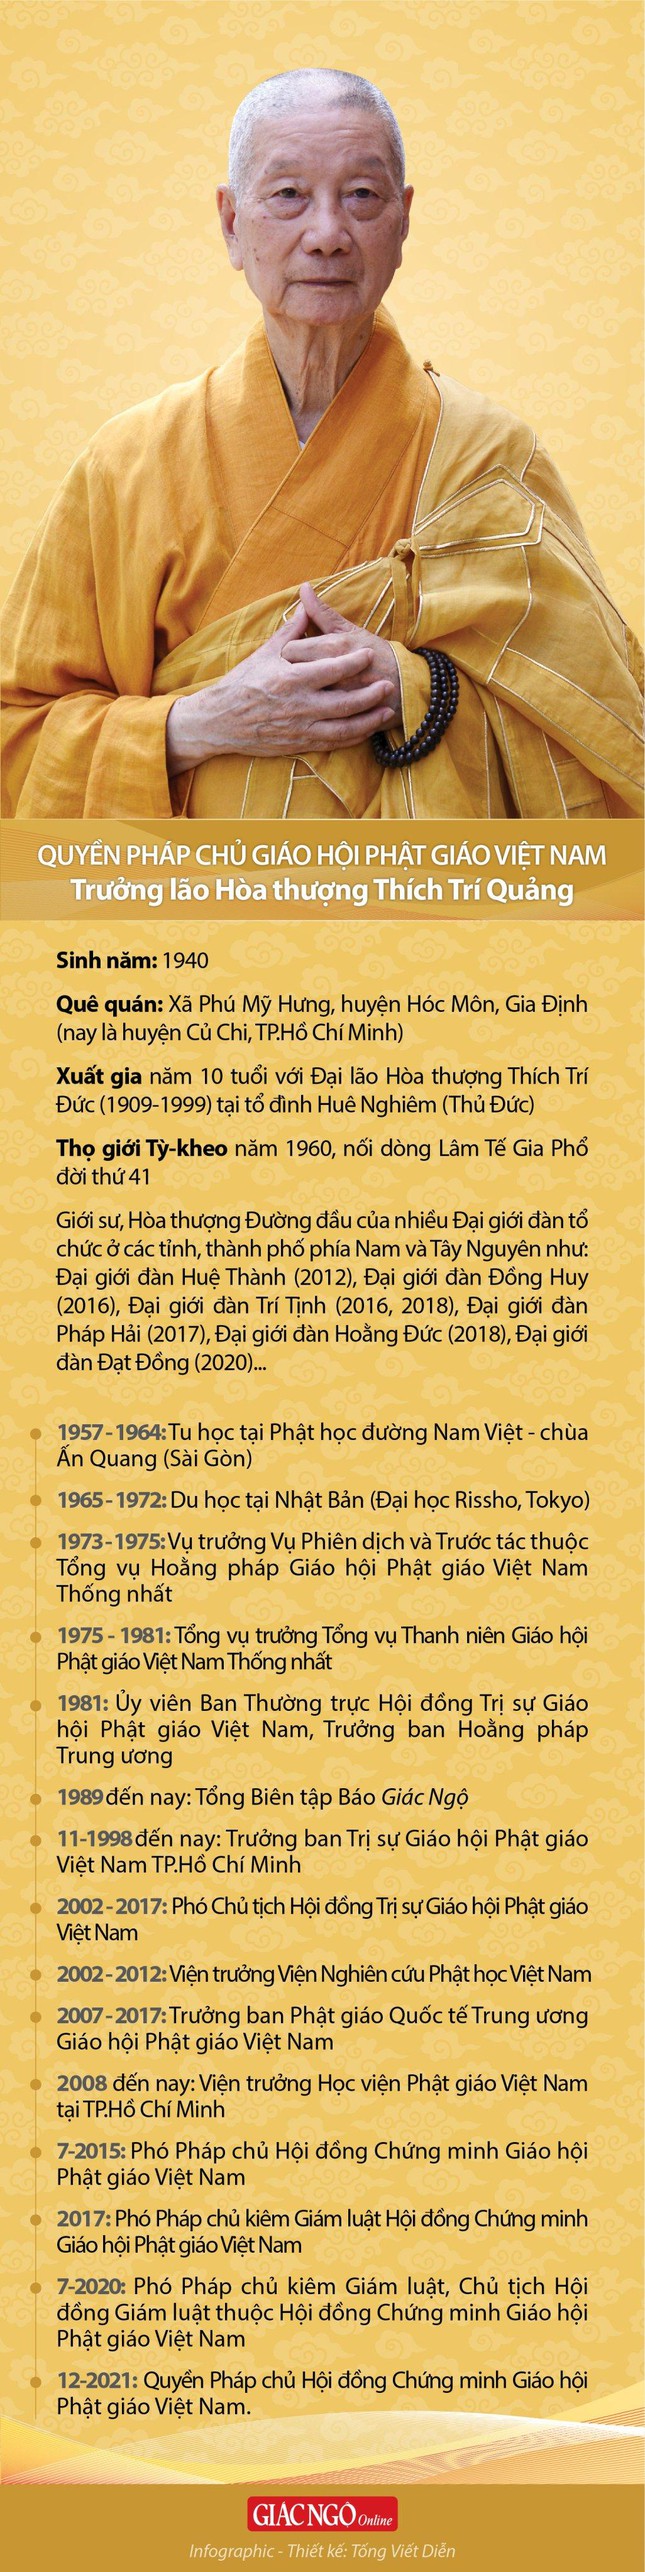 Hòa thượng Thích Trí Quảng đảm nhiệm Quyền Pháp chủ Giáo hội Phật giáo Việt Nam - Ảnh 3.